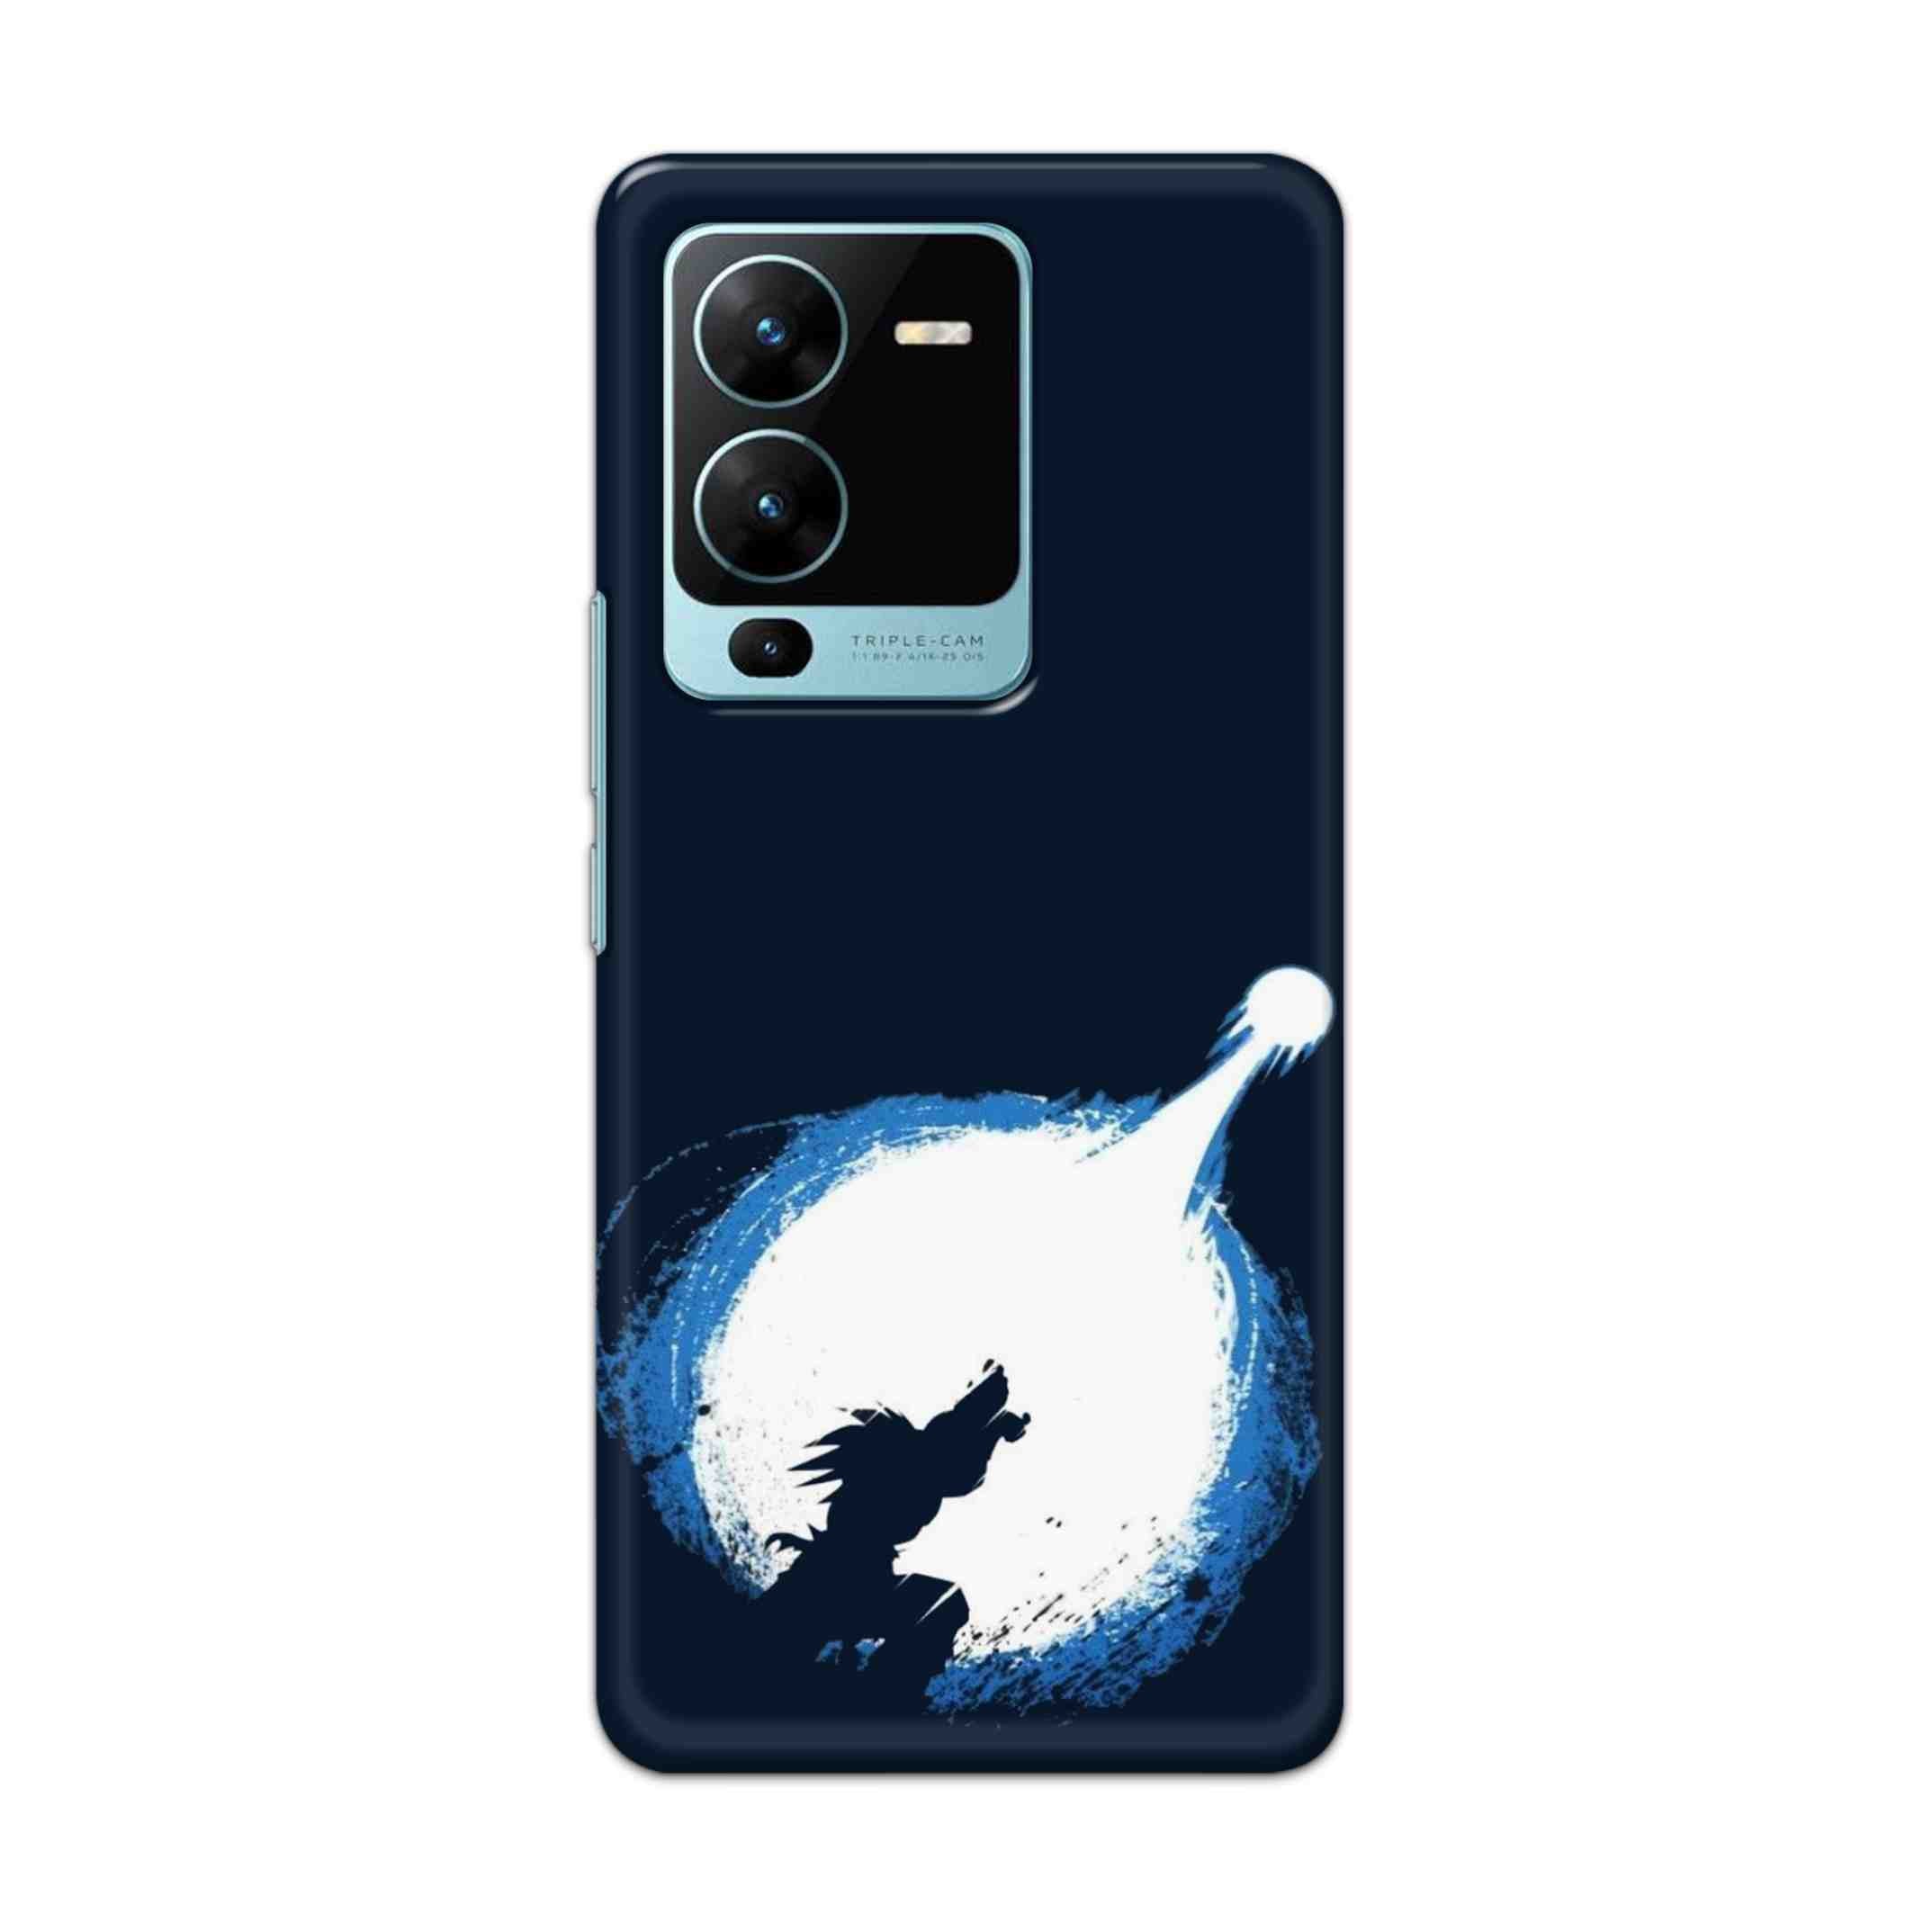 Buy Goku Power Hard Back Mobile Phone Case Cover For Vivo V25 Pro Online